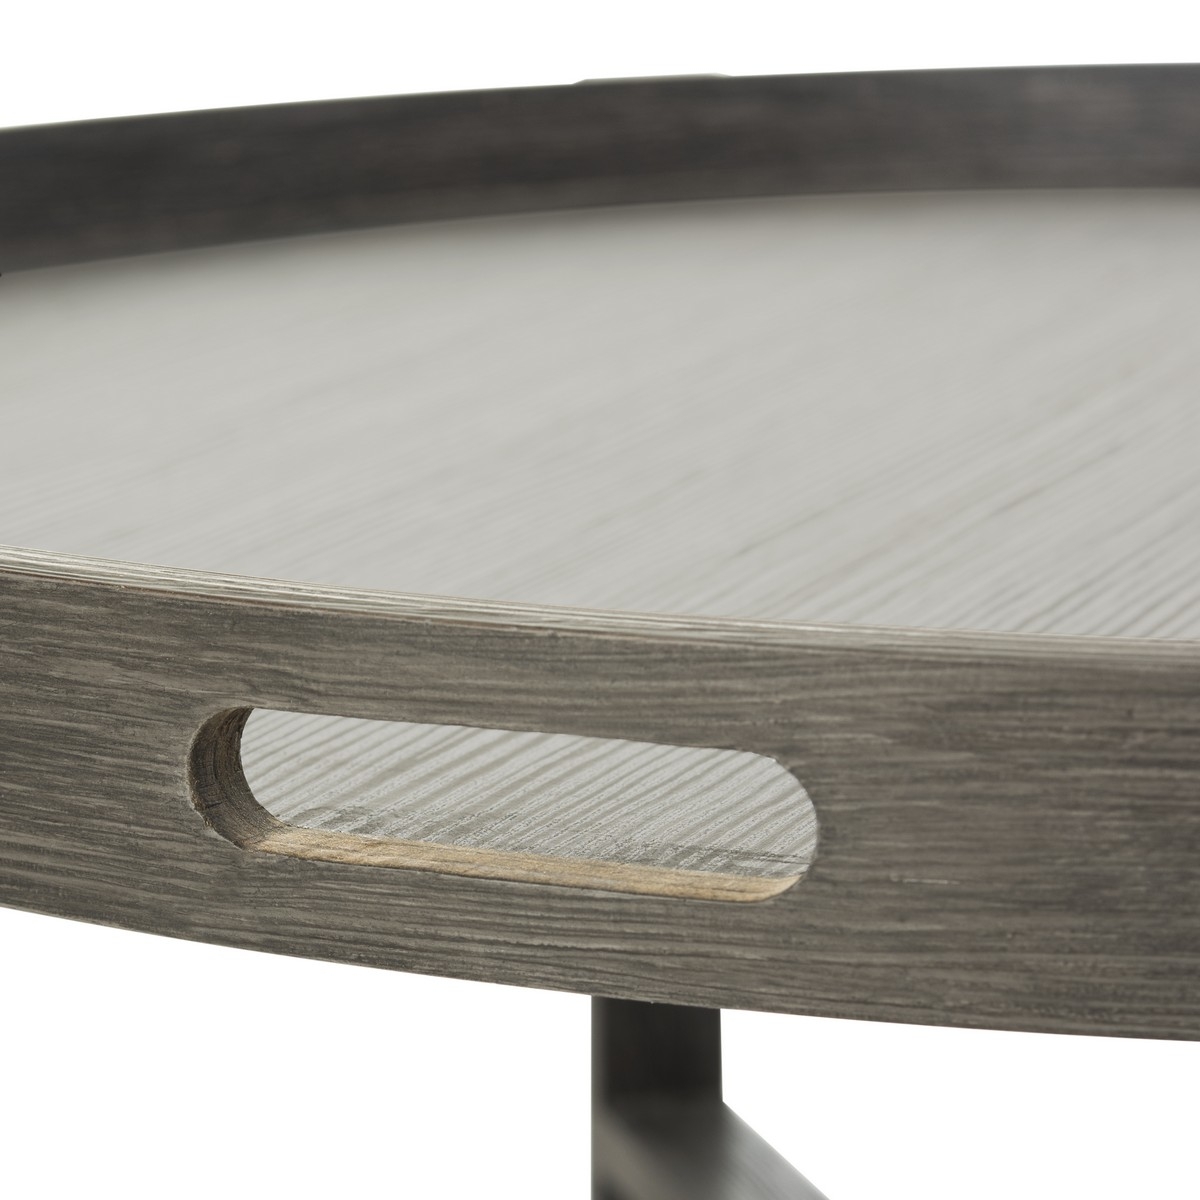 Cursten Retro Mid Century Wood Tray Top Coffee Table - Dark Grey - Arlo Home - Image 7